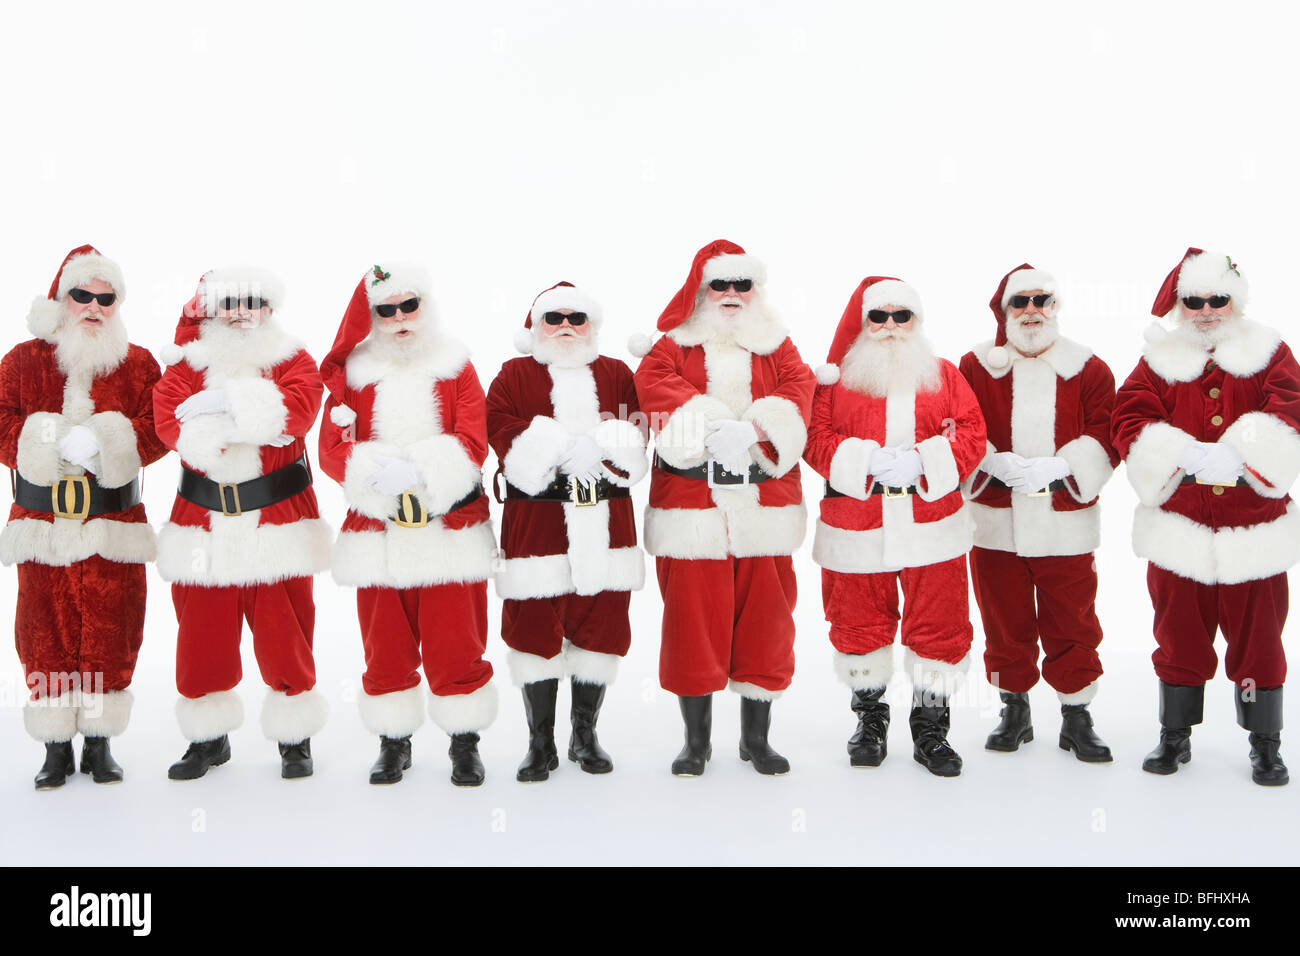 Foto Di Uomini Vestiti Da Babbo Natale.Un Gruppo Di Uomini Vestiti Da Babbo Natale Con Occhiali Da Sole Foto Stock Alamy